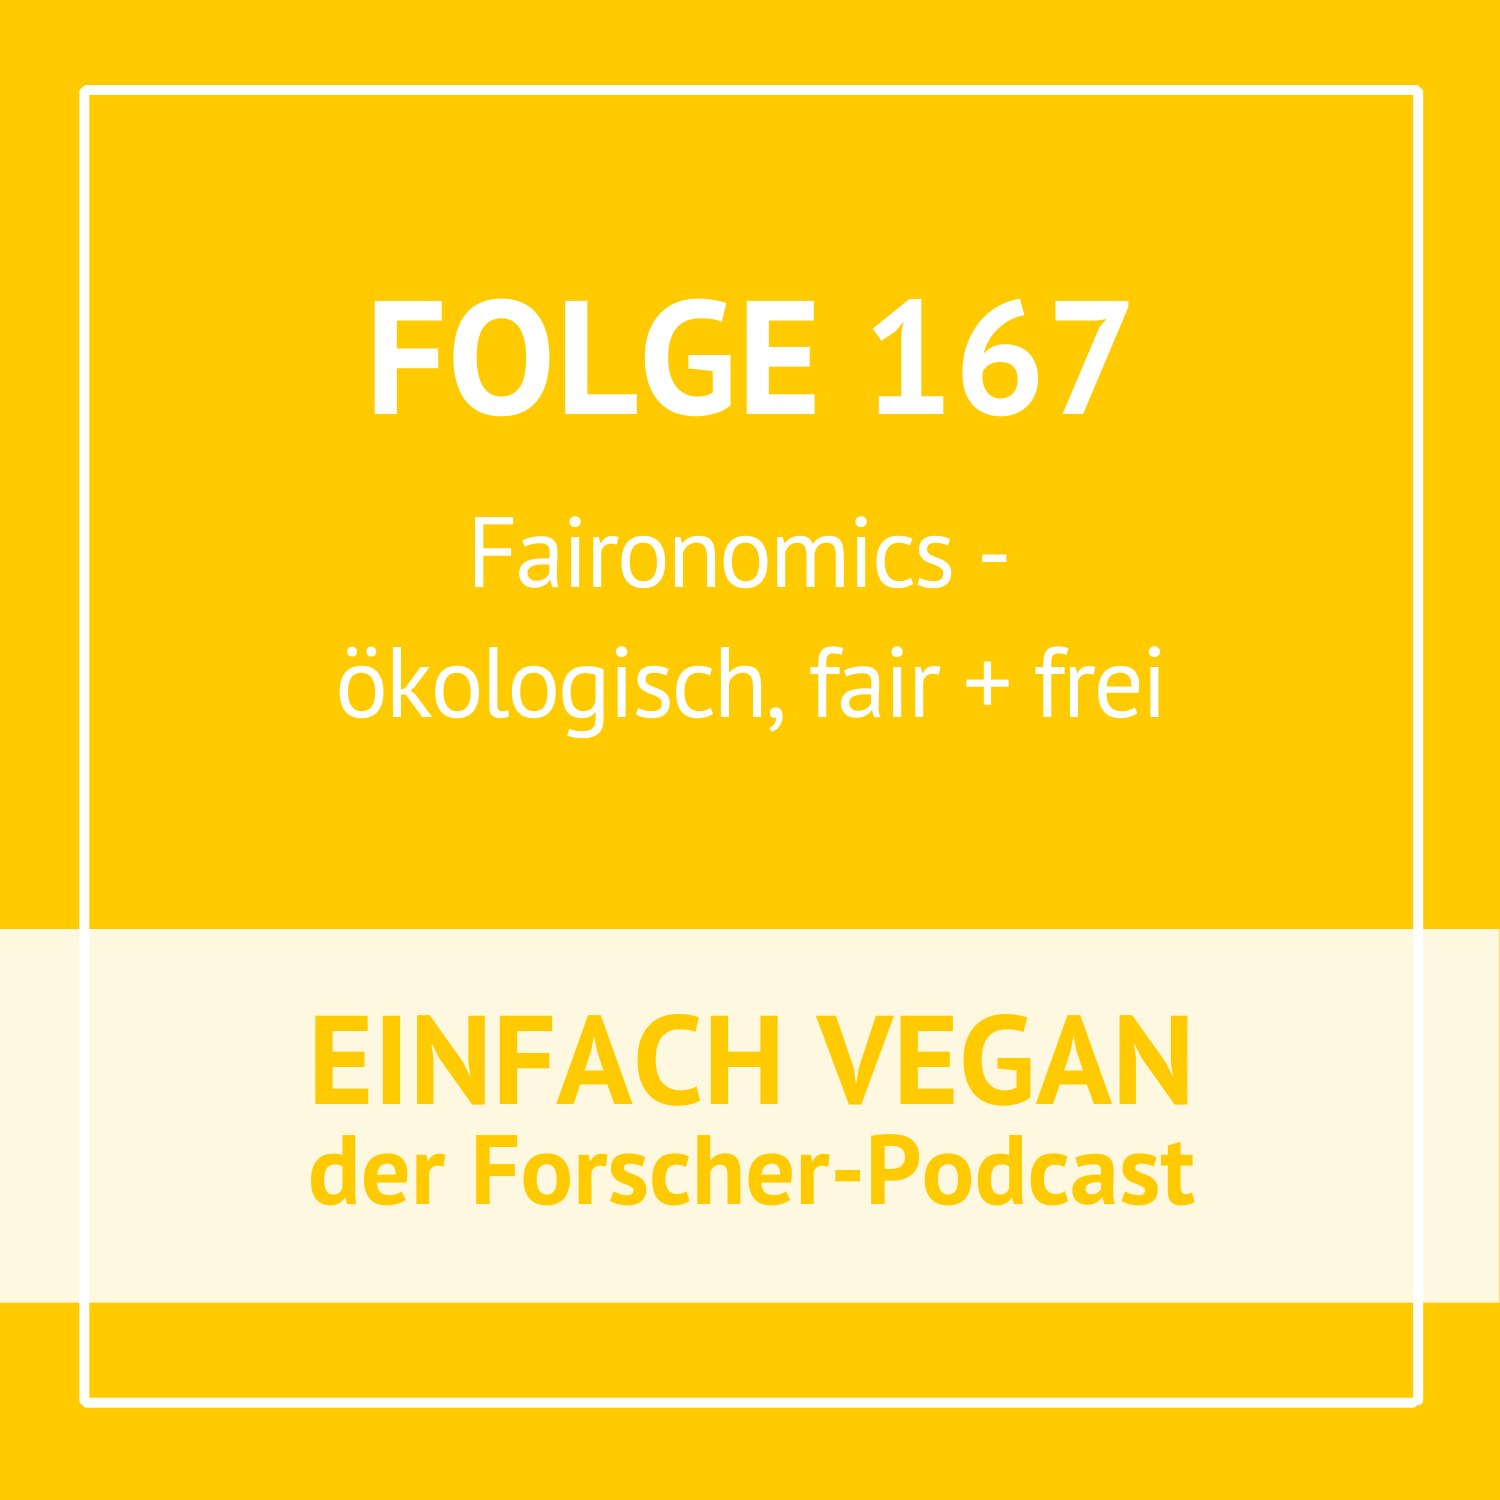 Folge 167 - Ilona und Marek über Faironomics - ökologisch, fair und frei